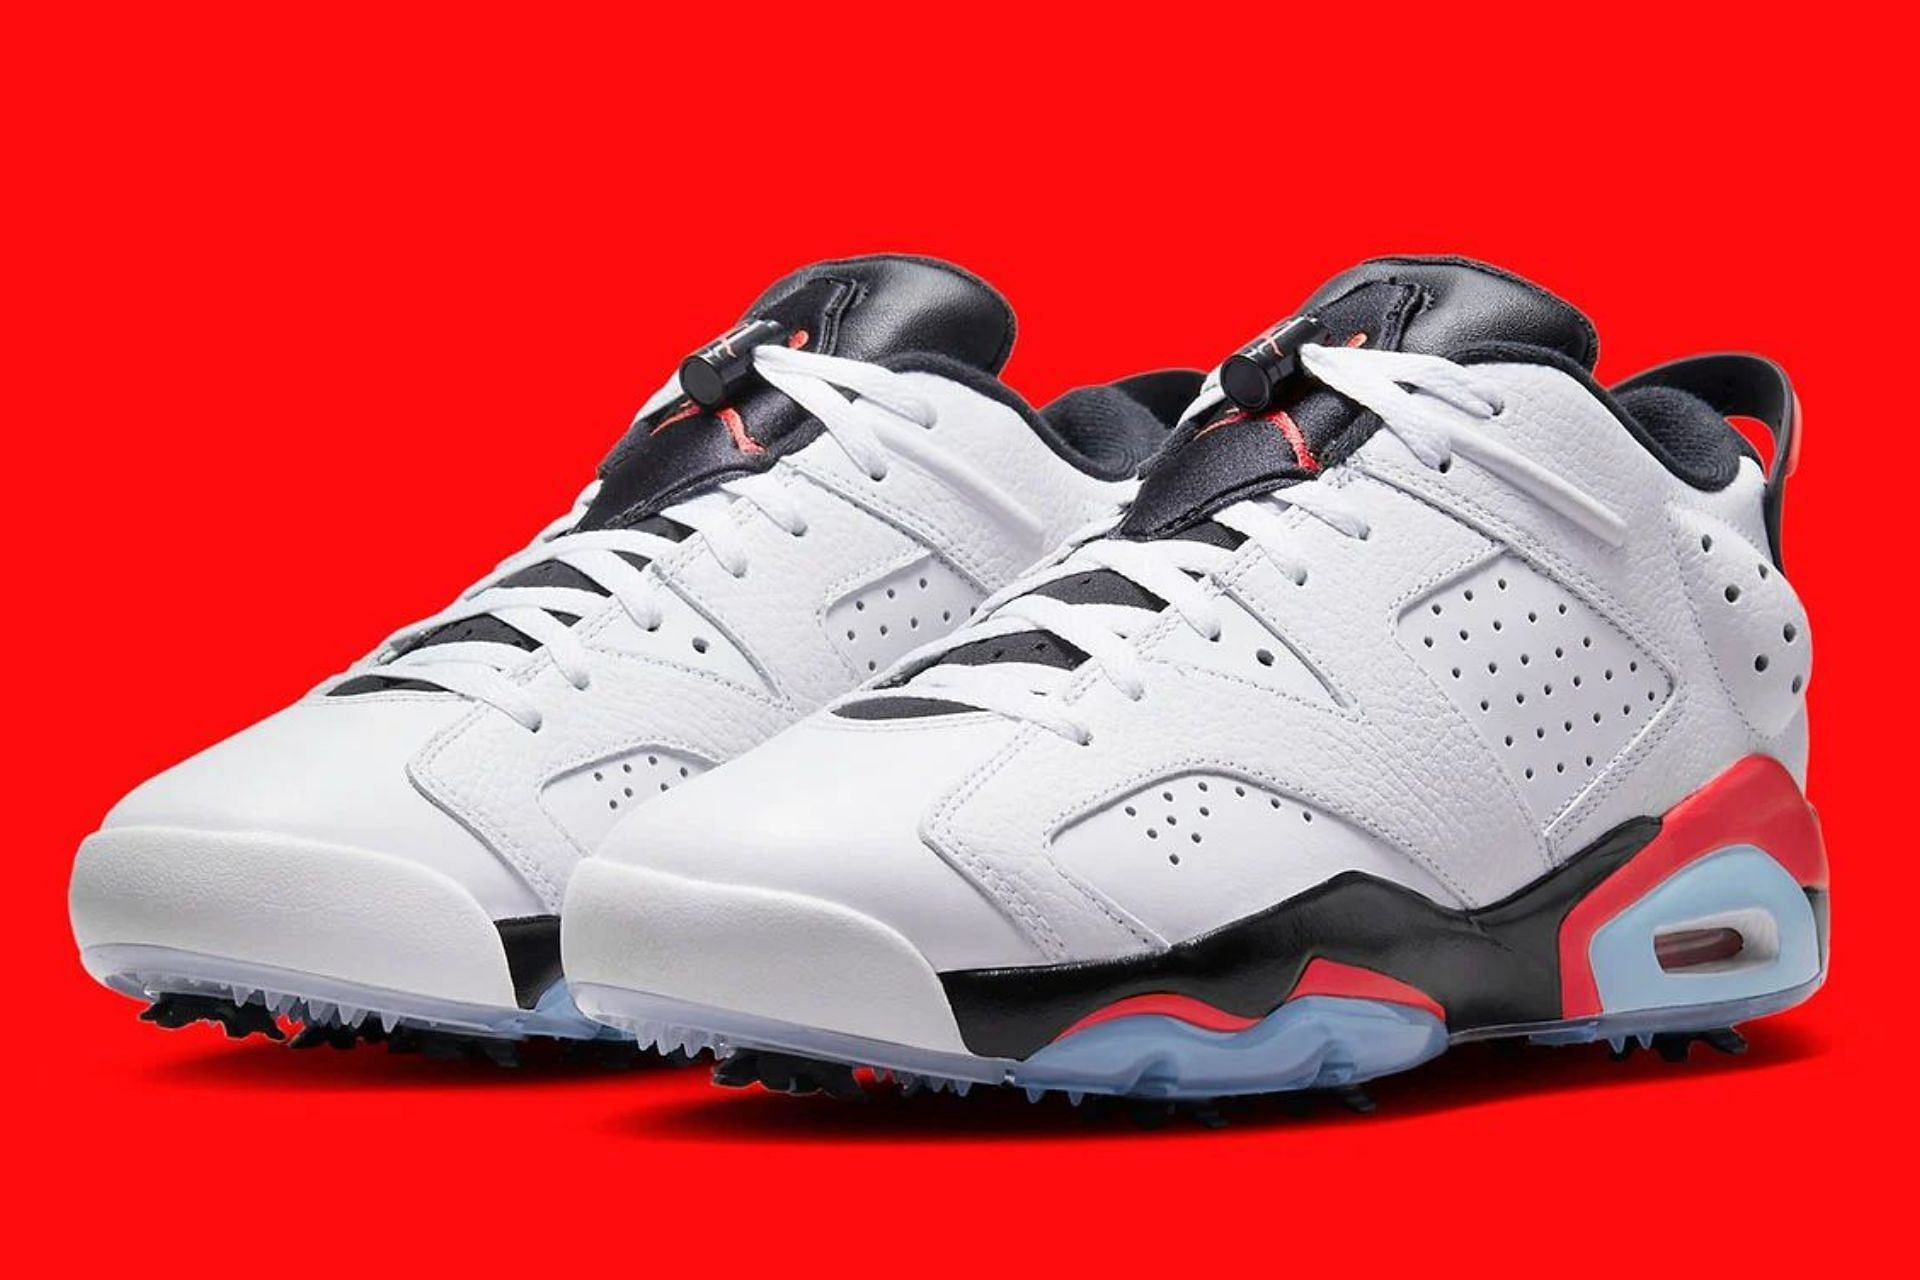 Air Jordan 6 Low Retro Infrared golf shoes (Image via Nike)